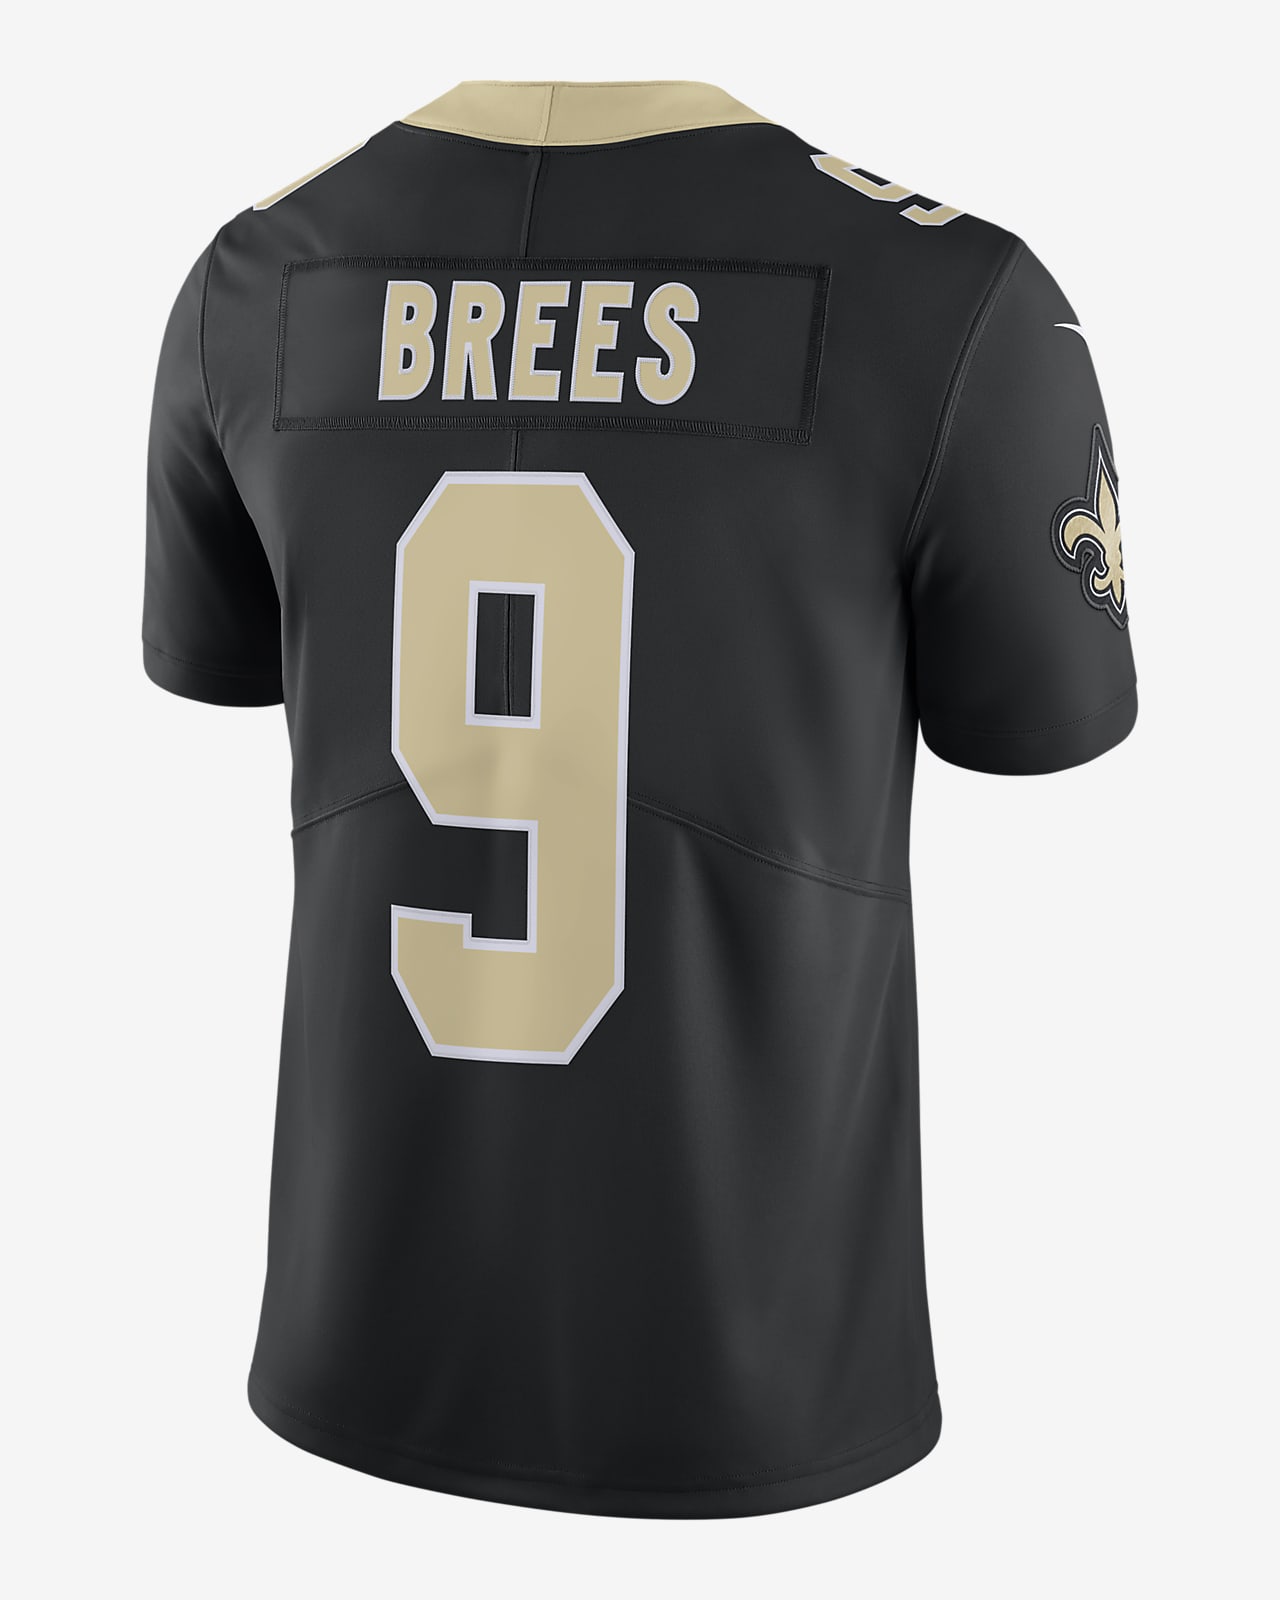 NFL New Orleans Saints Vapor Untouchable (Drew Brees) Men's Limited Football Jersey